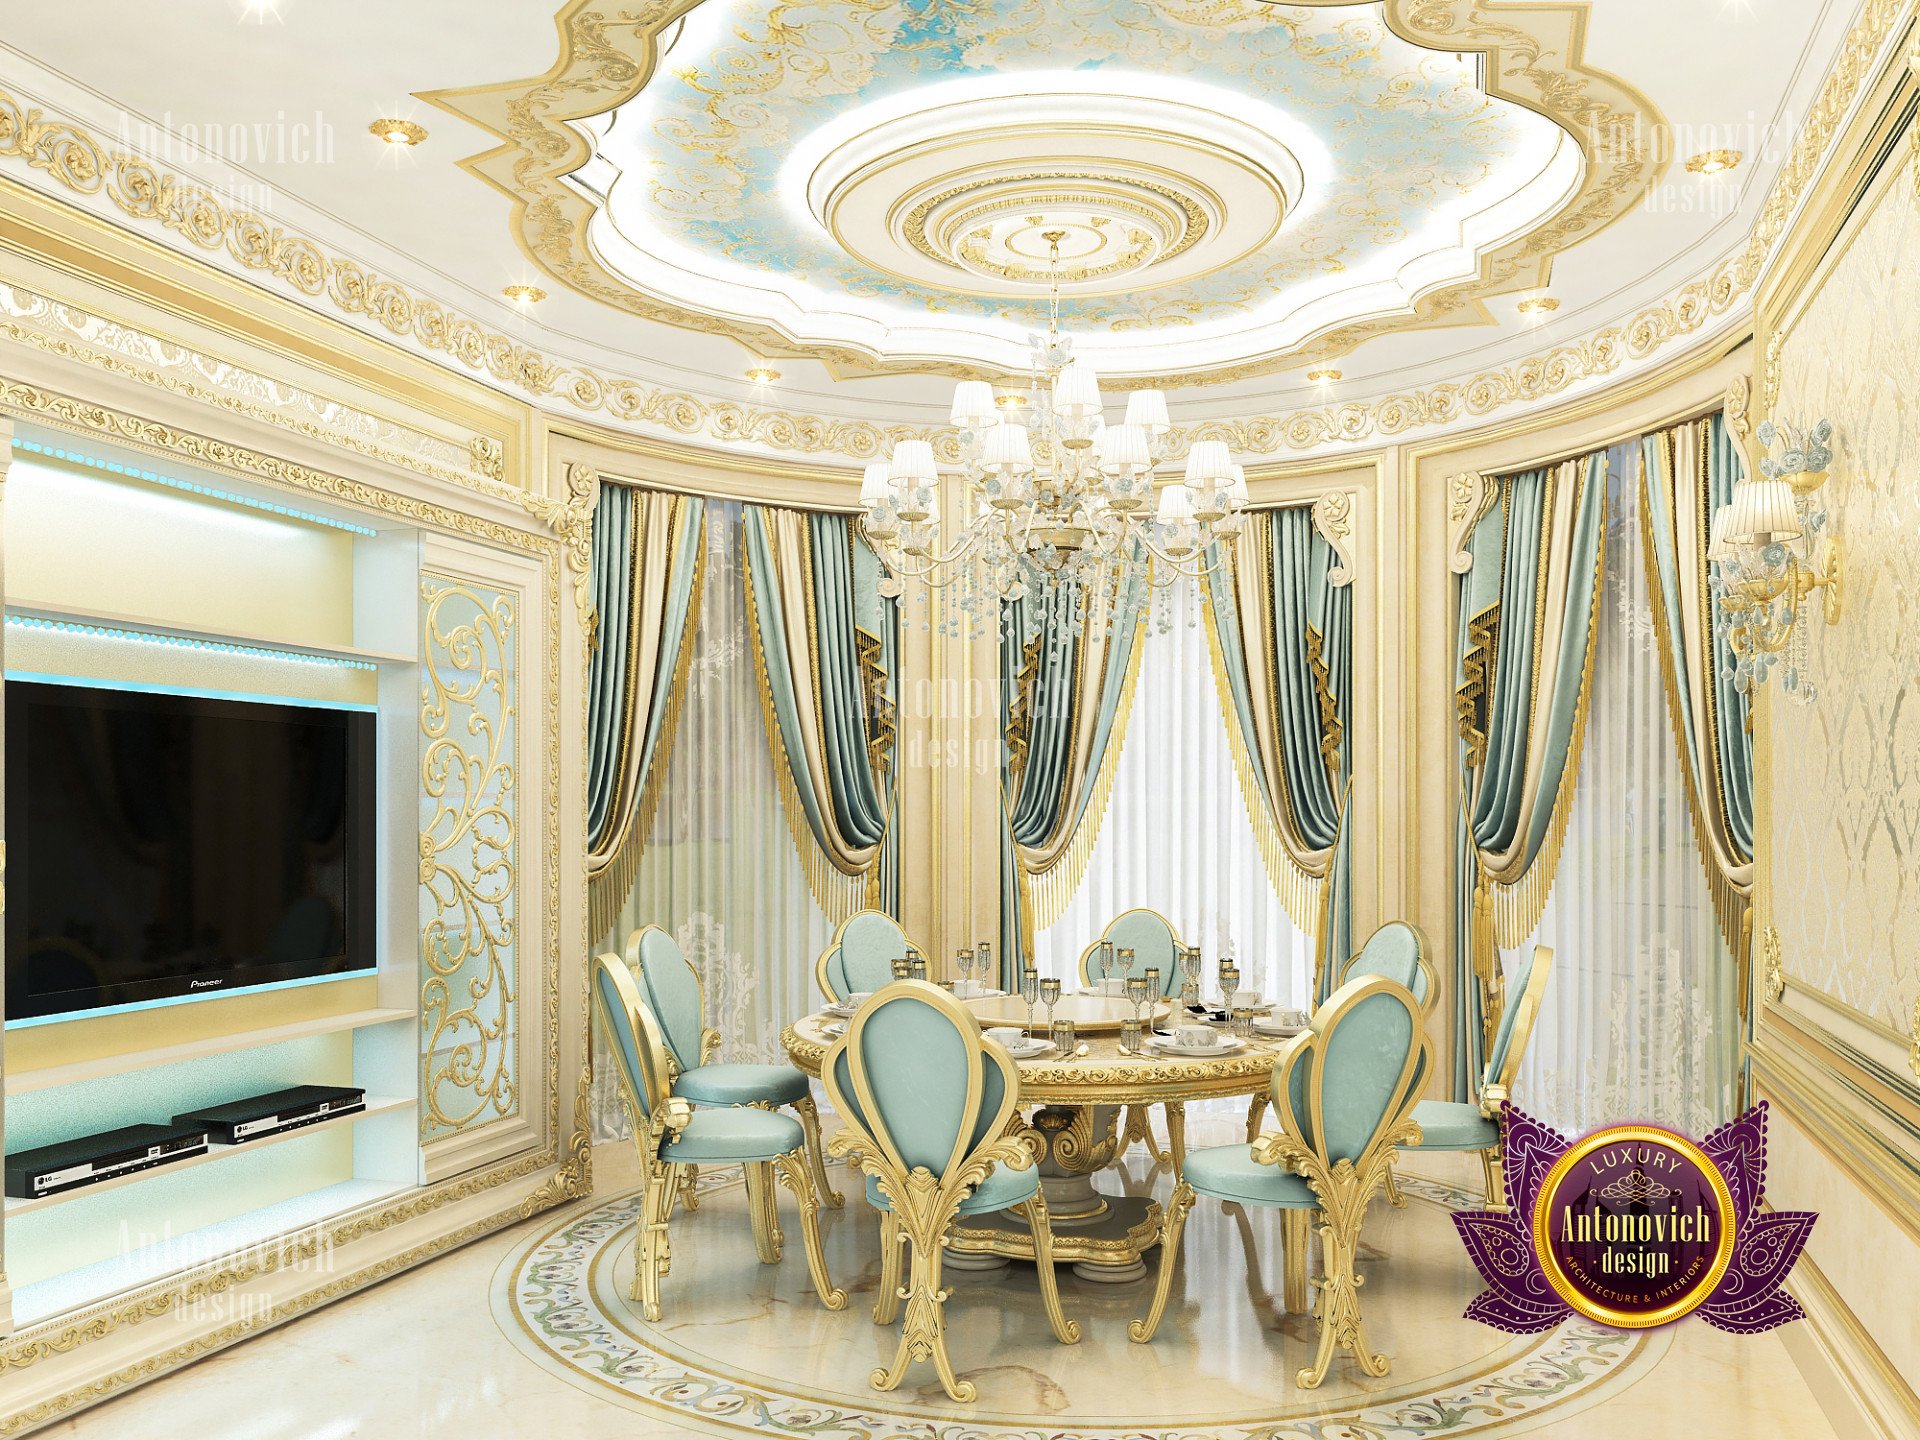 Splendid kitchen interior Dubai